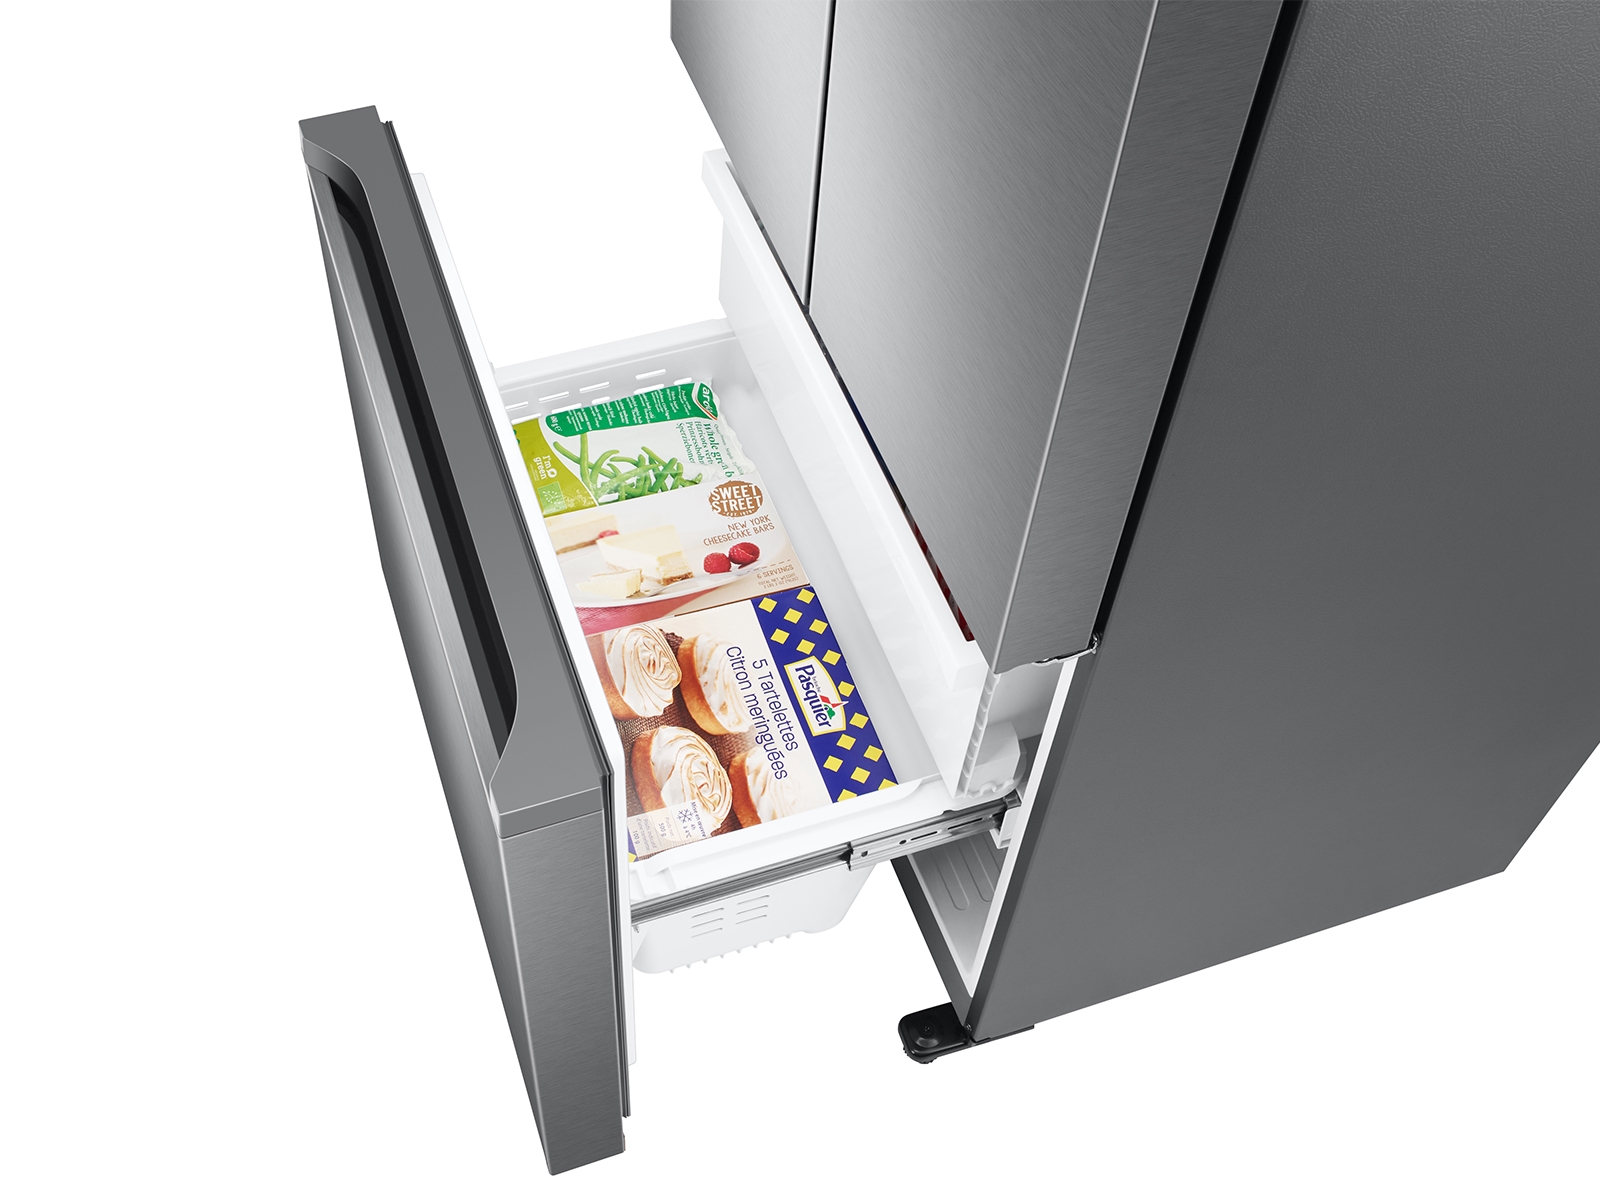 Thumbnail image of 18 cu. ft. Smart Counter Depth 3-Door French Door Refrigerator in Stainless Look